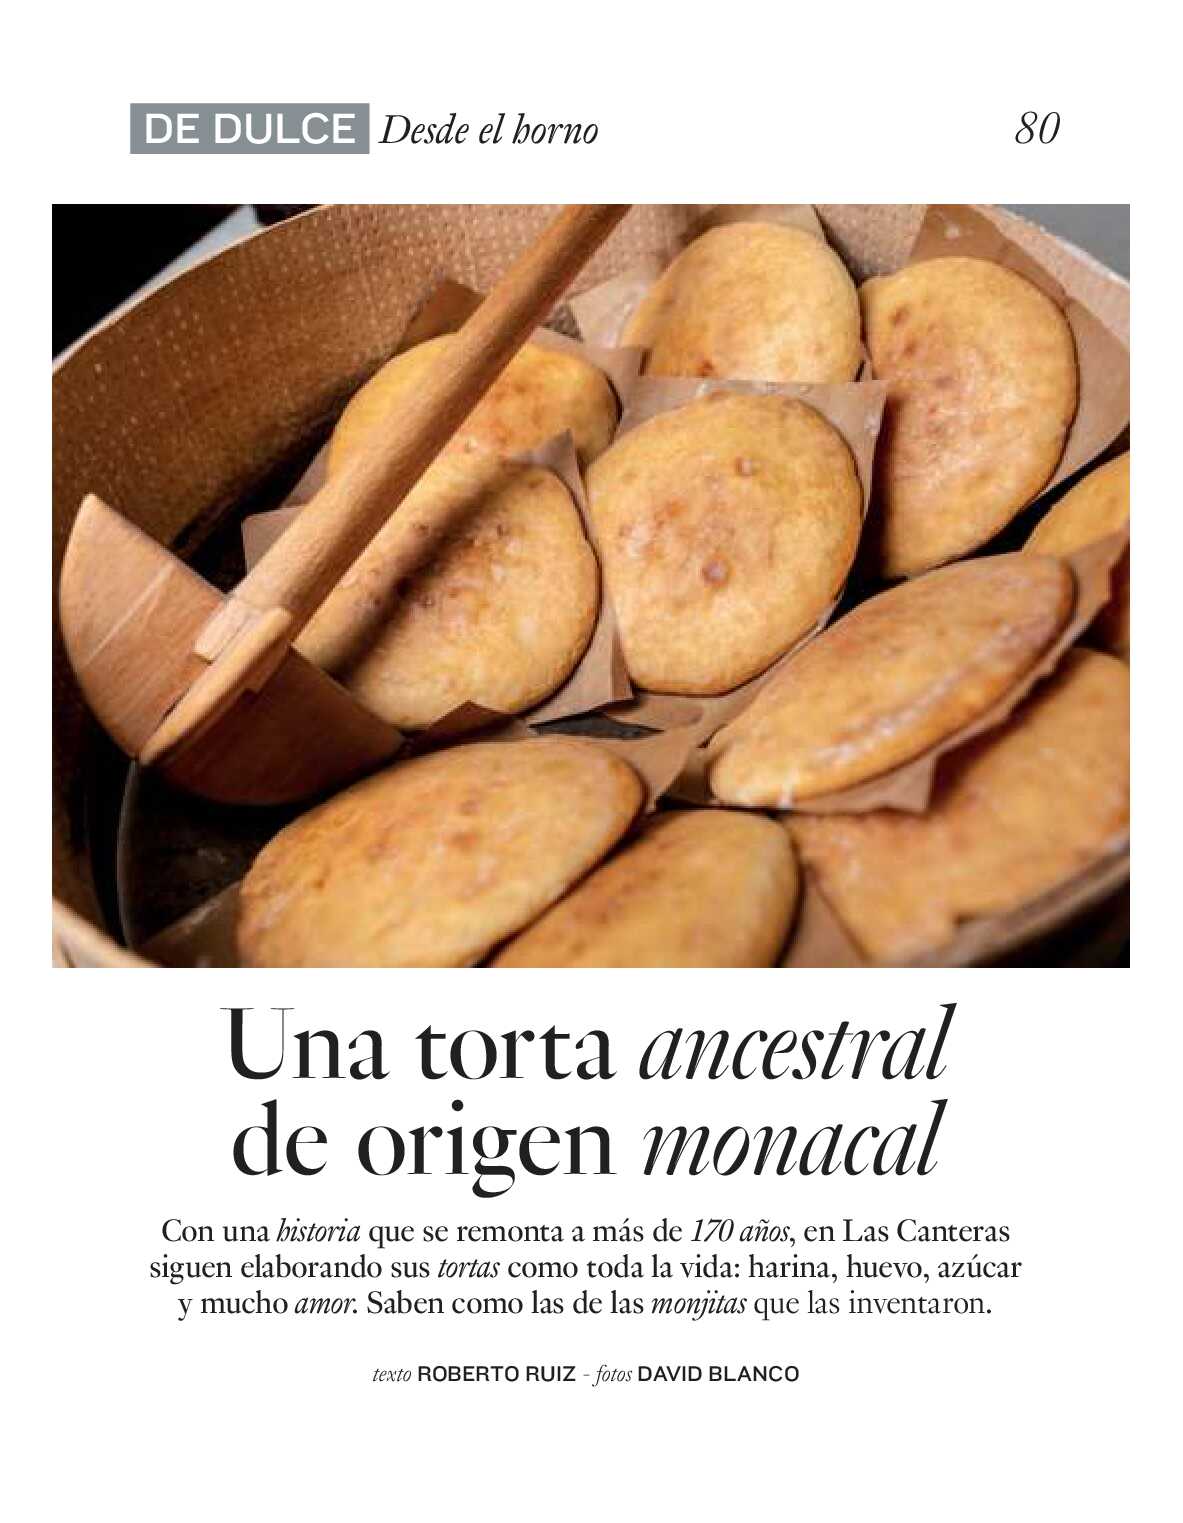 Gourmet magazine El Corte Inglés. Página 80